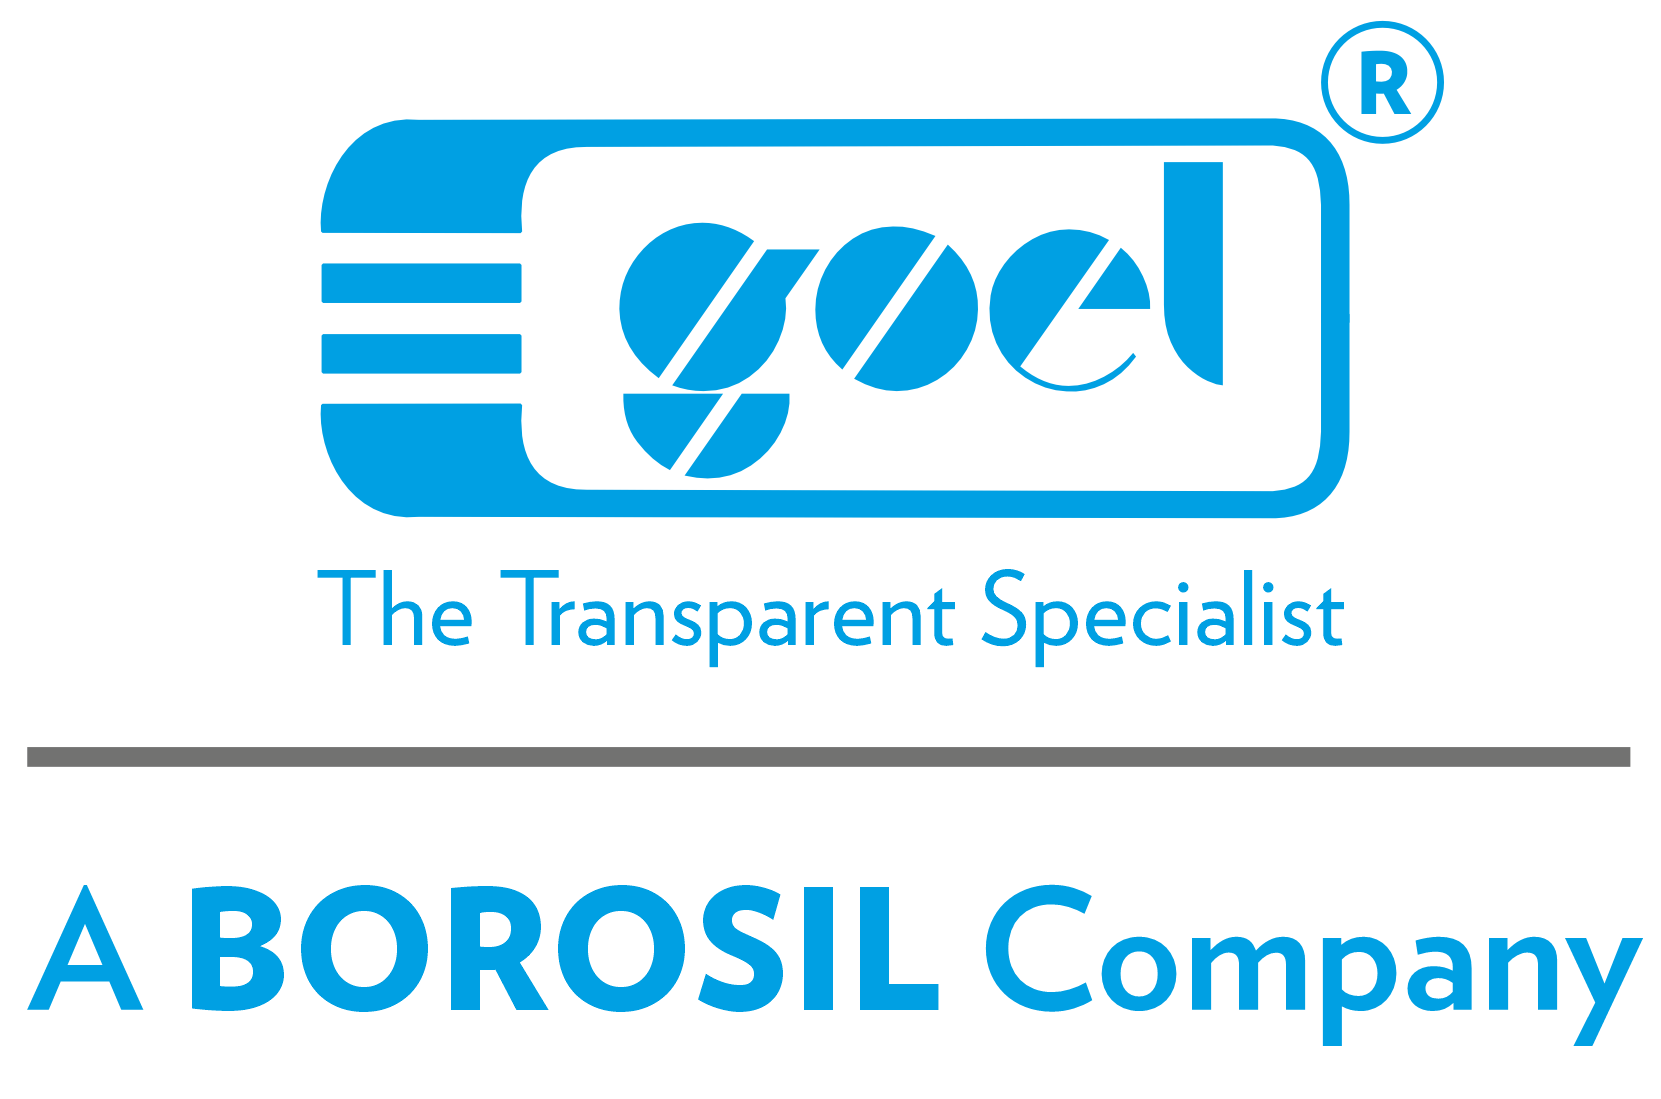 Goel Borosil Logo